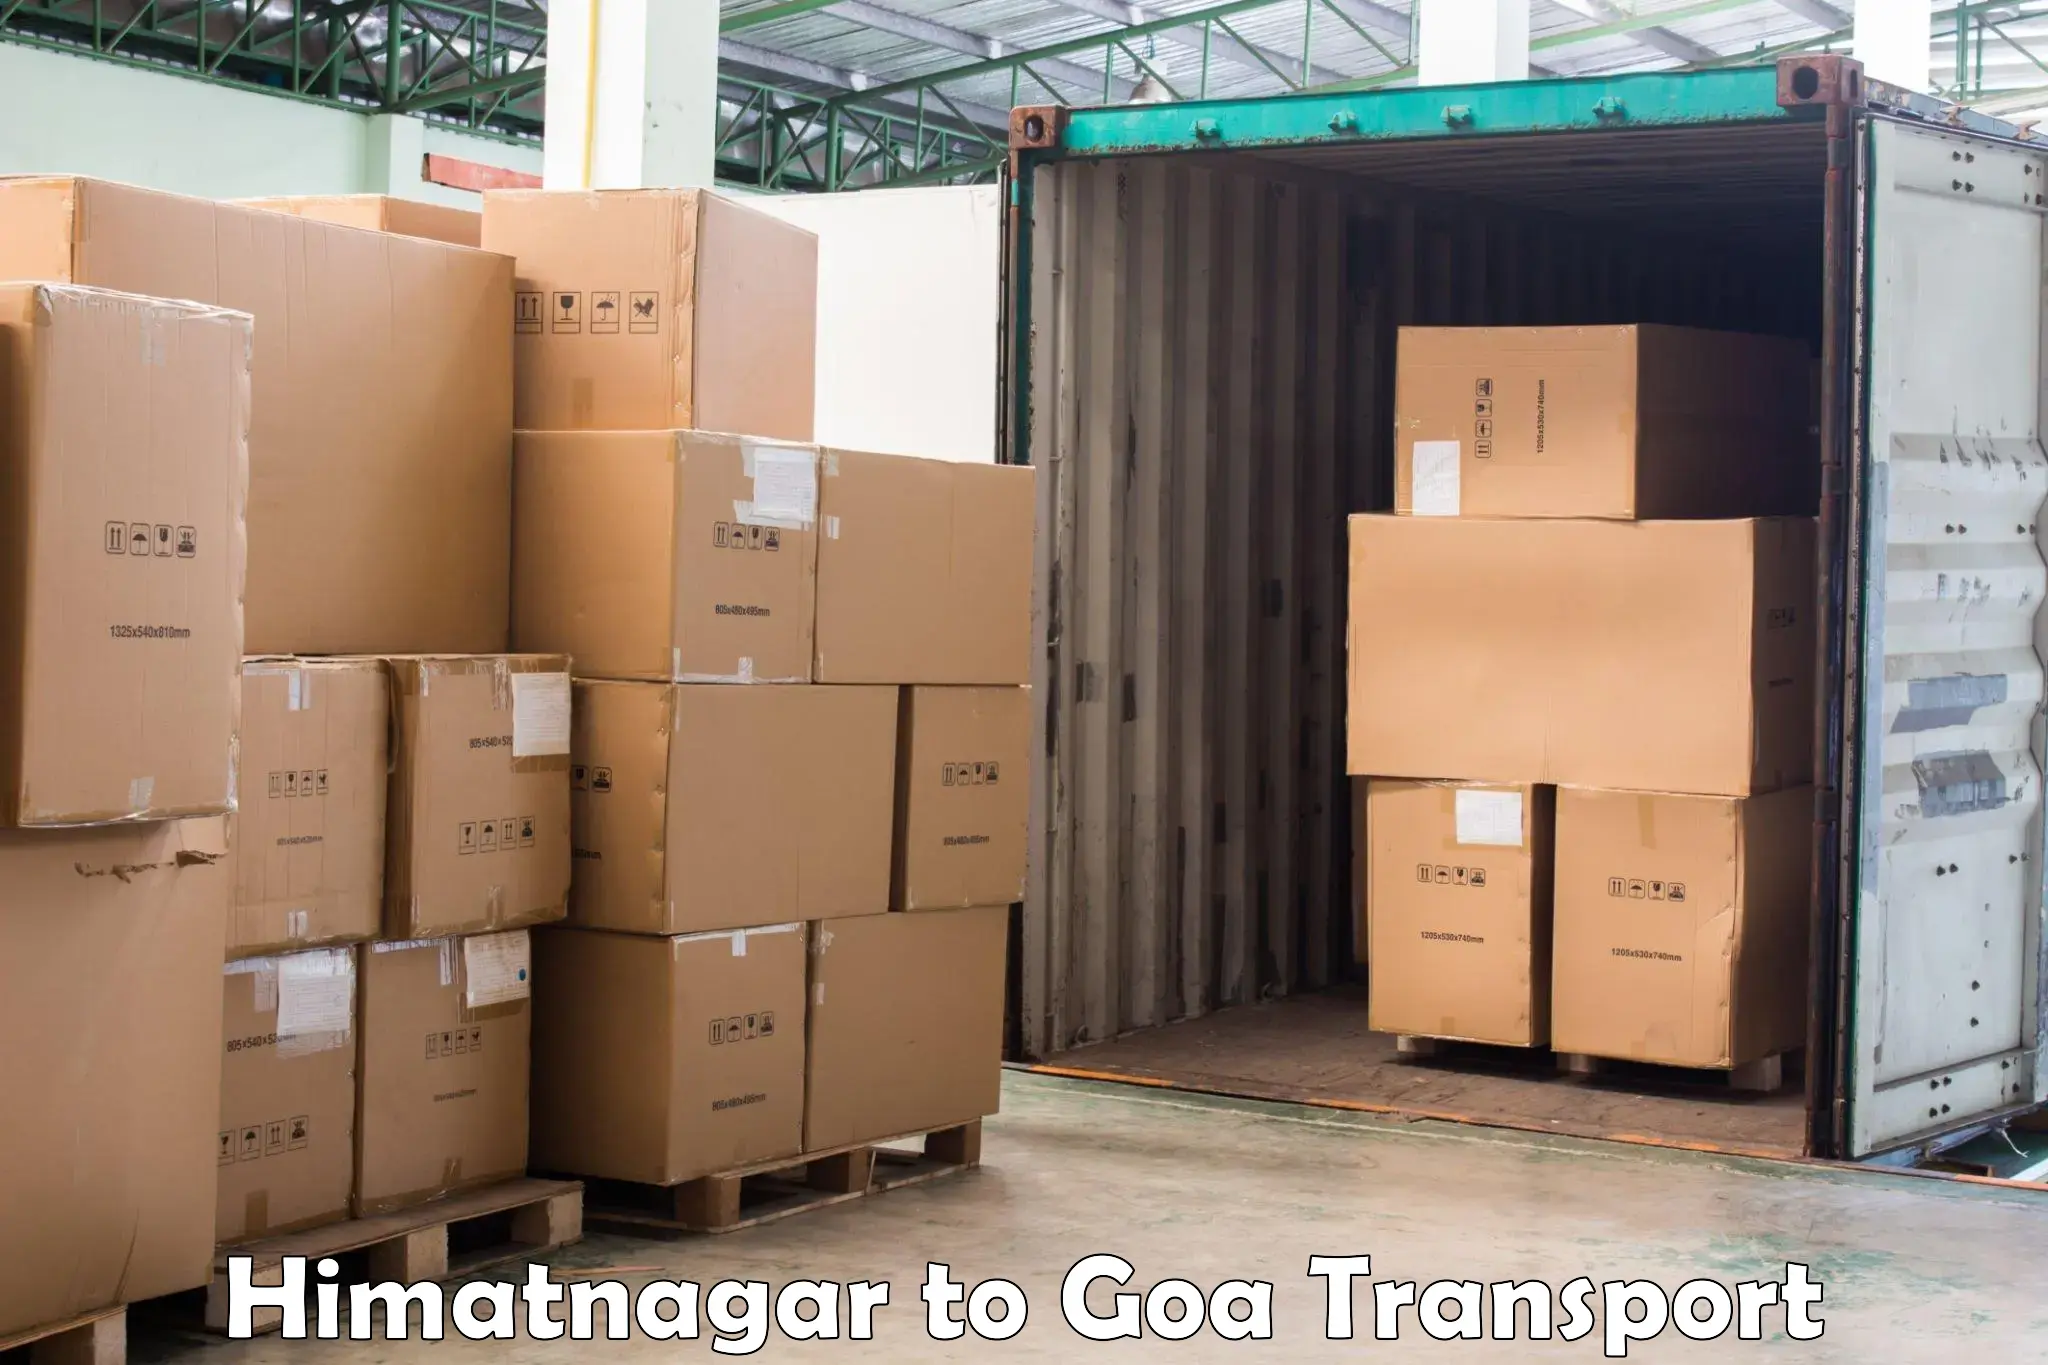 Transport in sharing Himatnagar to Vasco da Gama